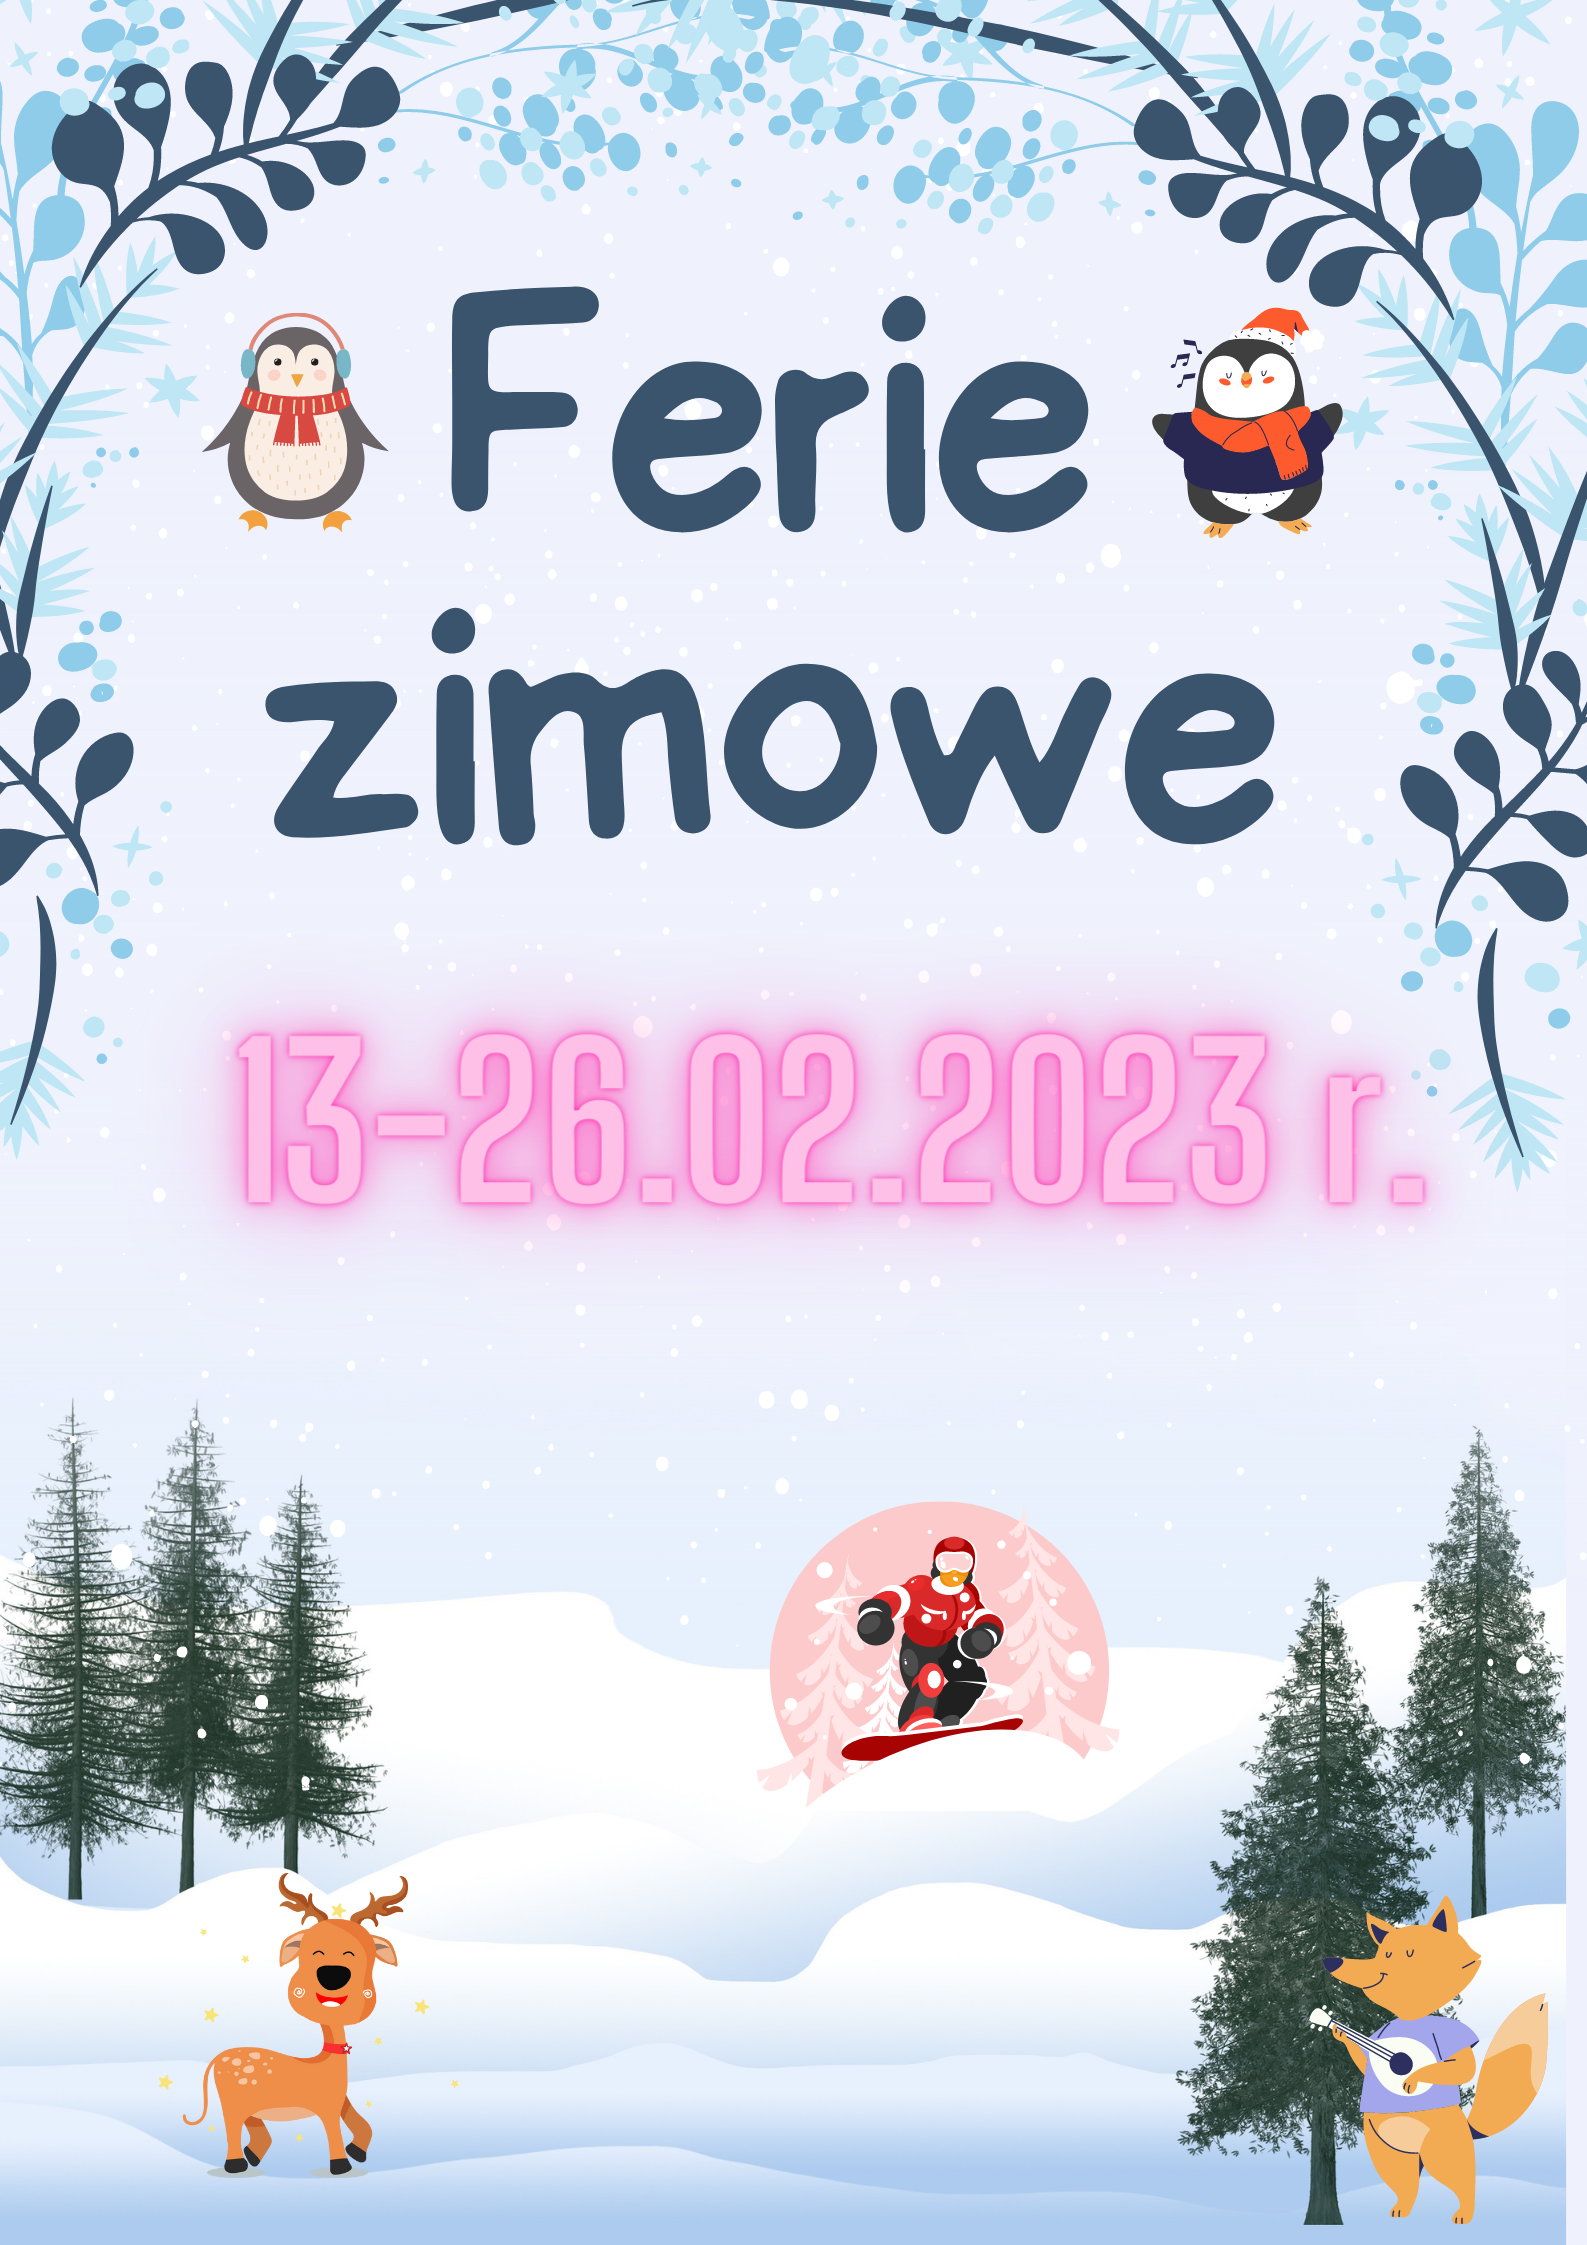 Plakat przedstawia zimowy krajobraz. Na plakacie znajdują się grafiki śpiewających pingwinków, renifera, snowboardzisty i grającego na gitarze liska.